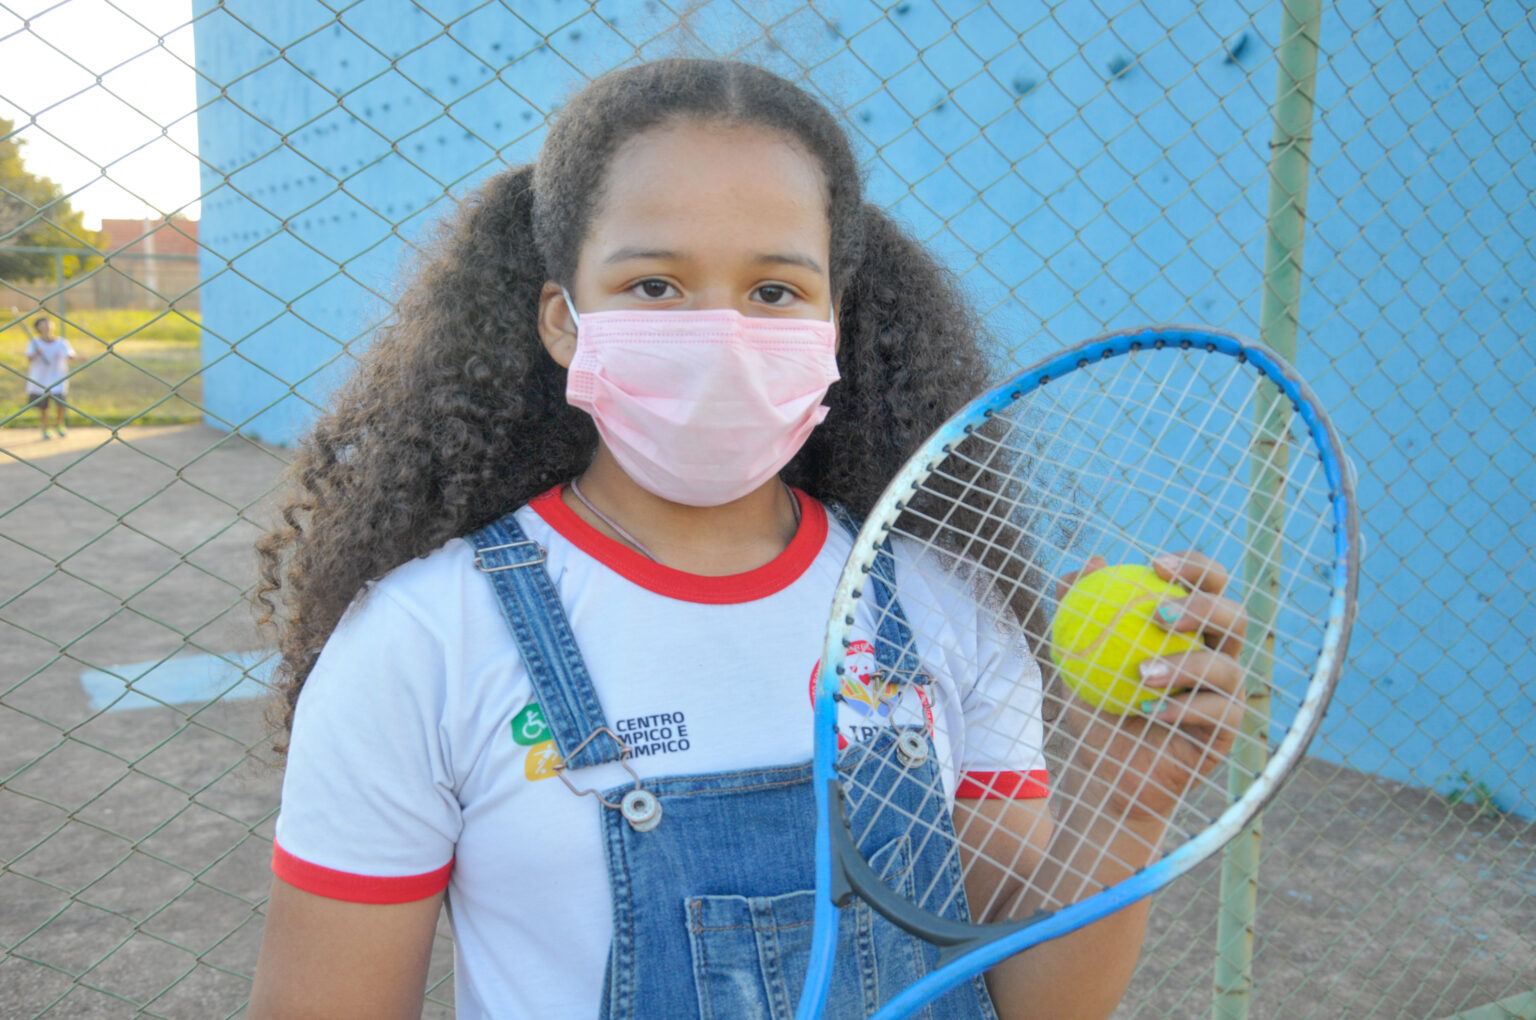 Crianças descobrem uma nova paixão esportiva na Estrutural, o tênis. (Foto: agencia brasília)